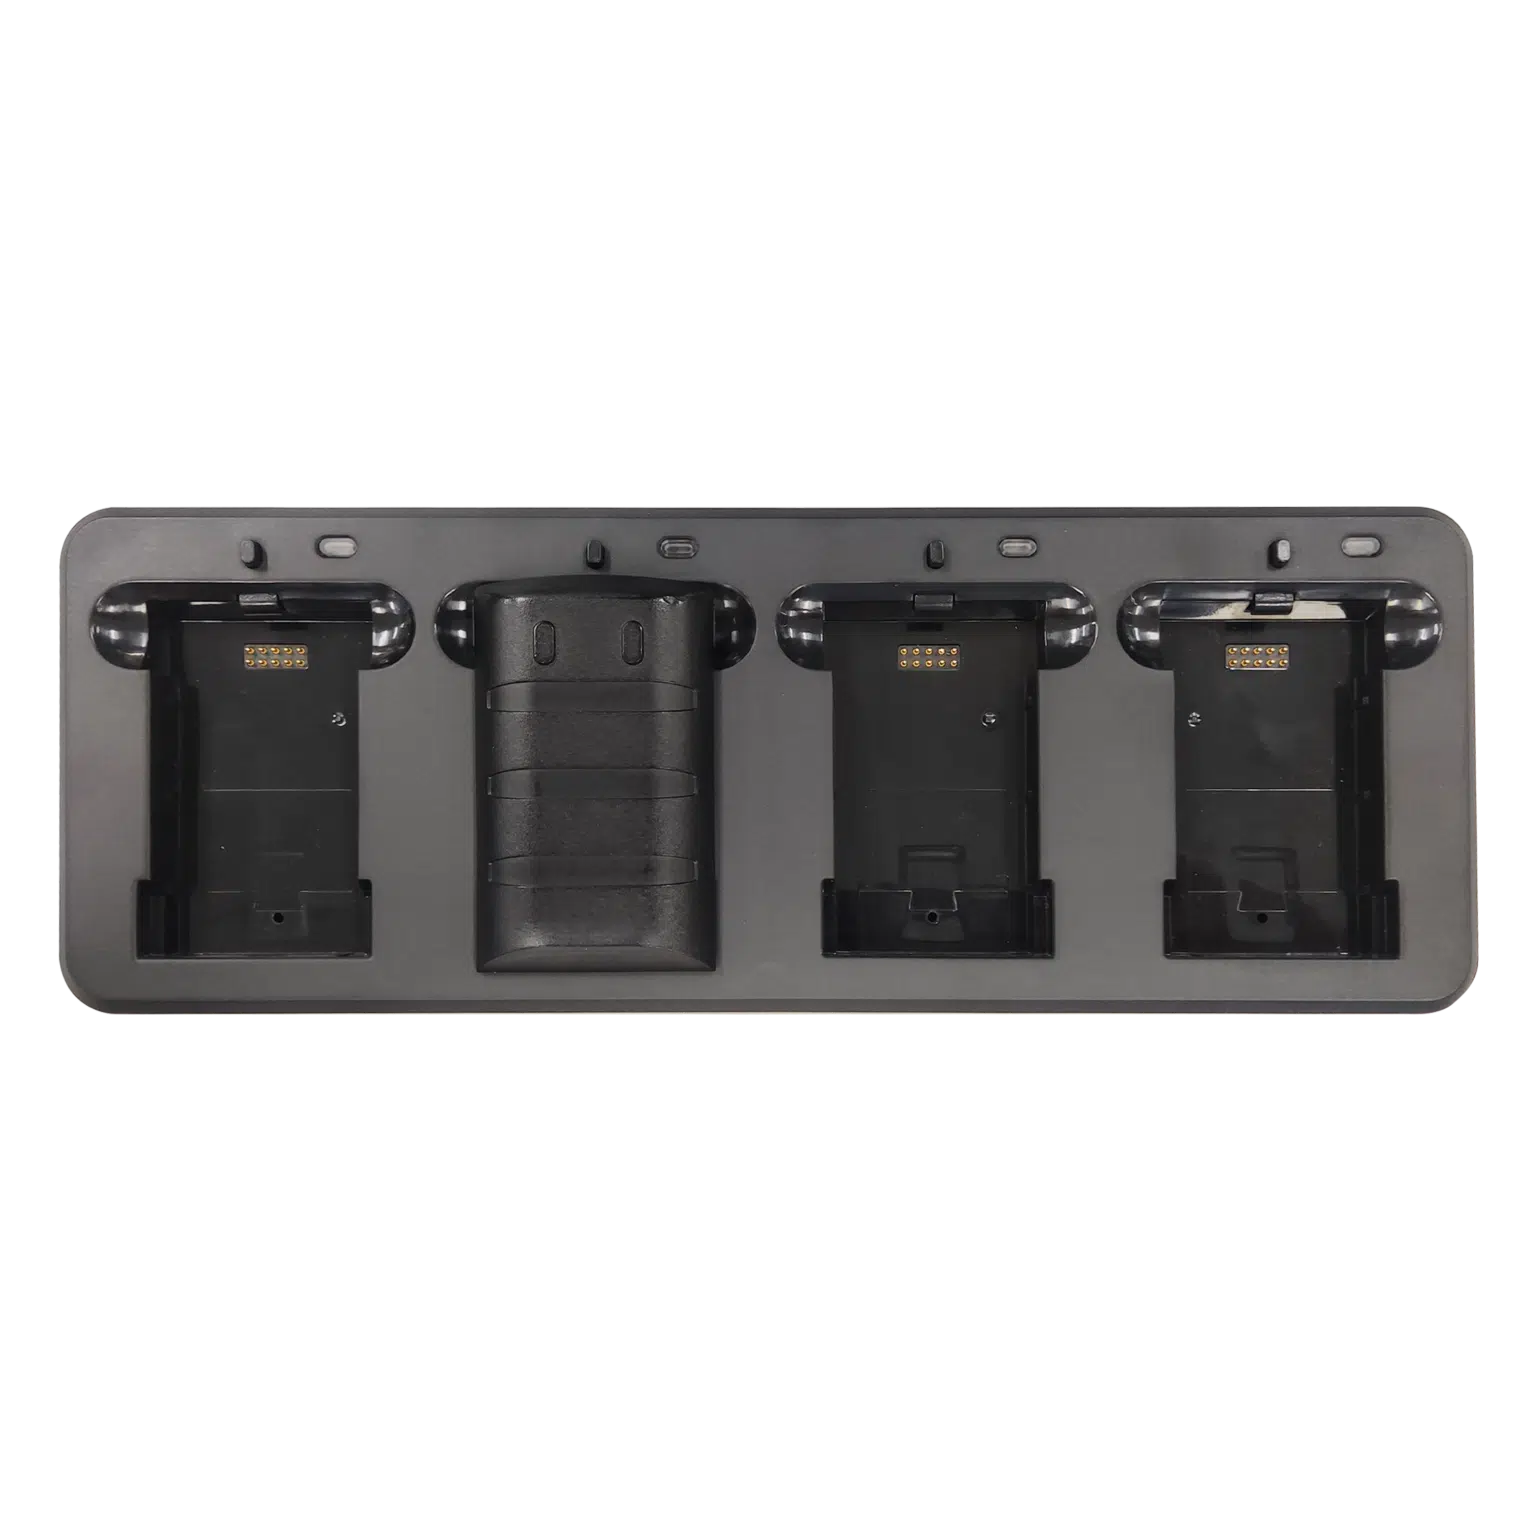 Зарядная подставка для АКБ iData K8 (Cradle 4 slot) заказать в ККМ.ЦЕНТР